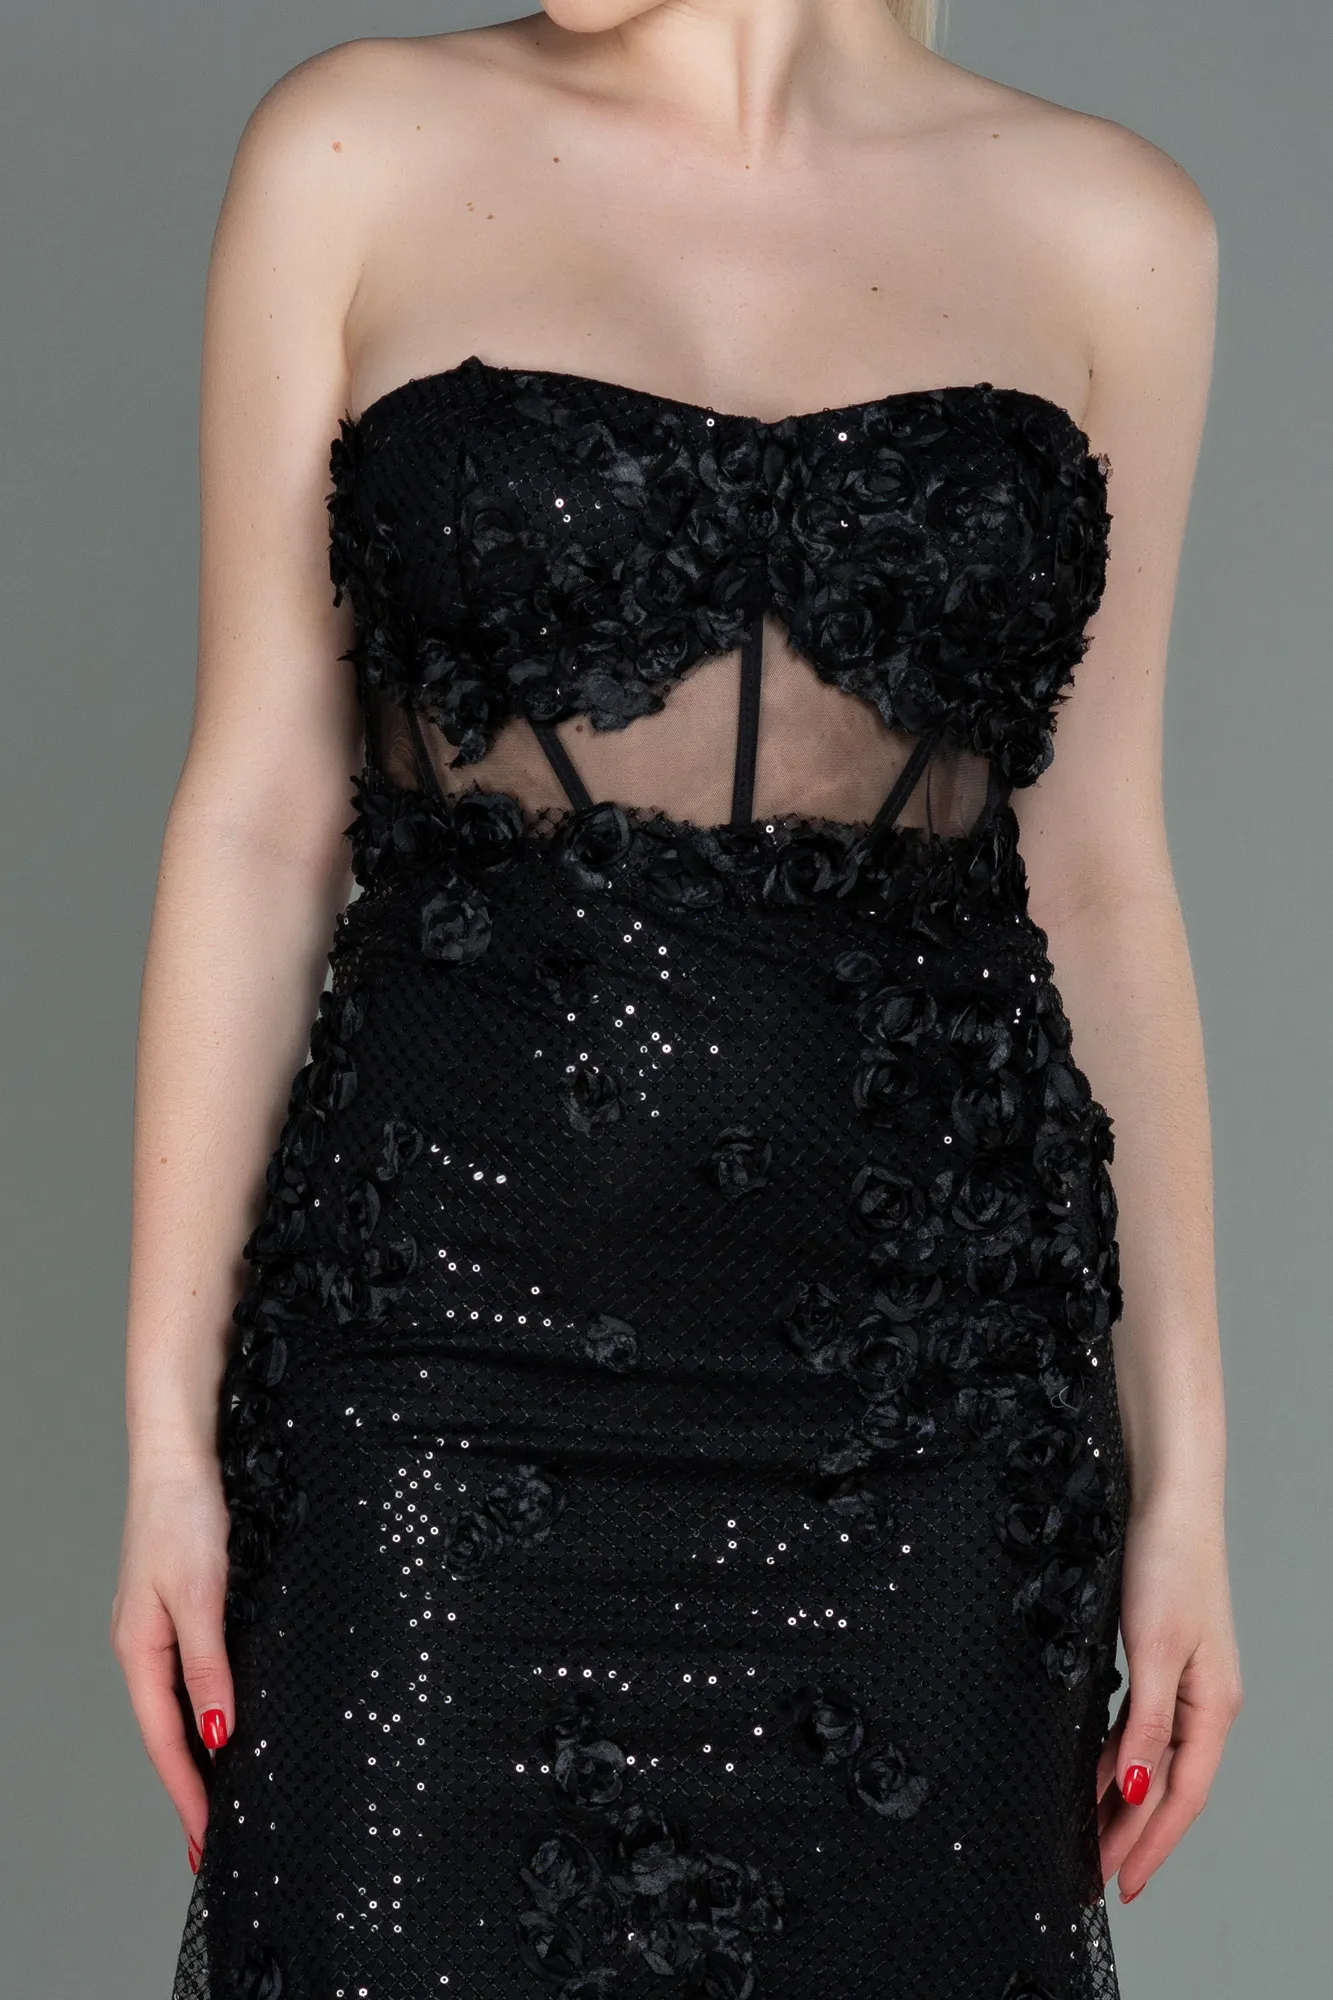 Black-Long Mermaid Prom Dress ABU3120